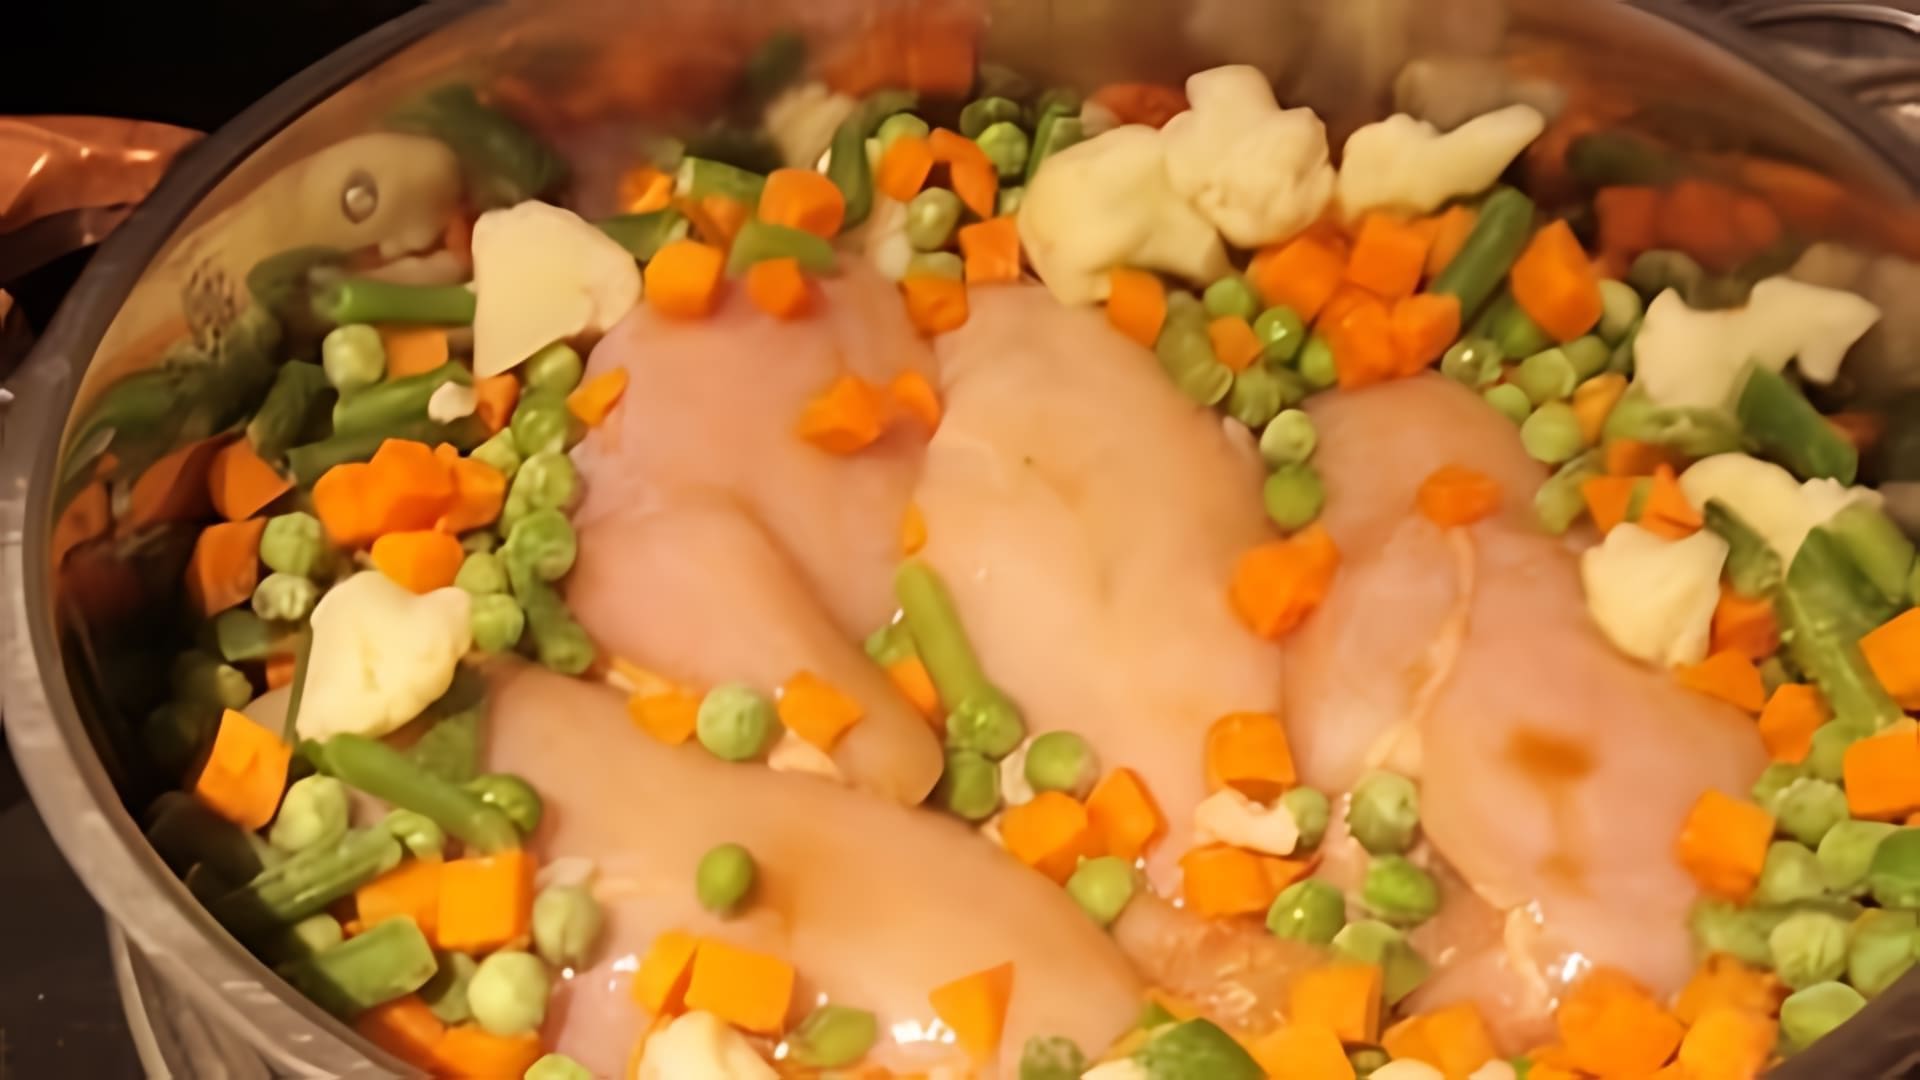 В этом видео демонстрируется процесс приготовления курицы с овощами в пароварке